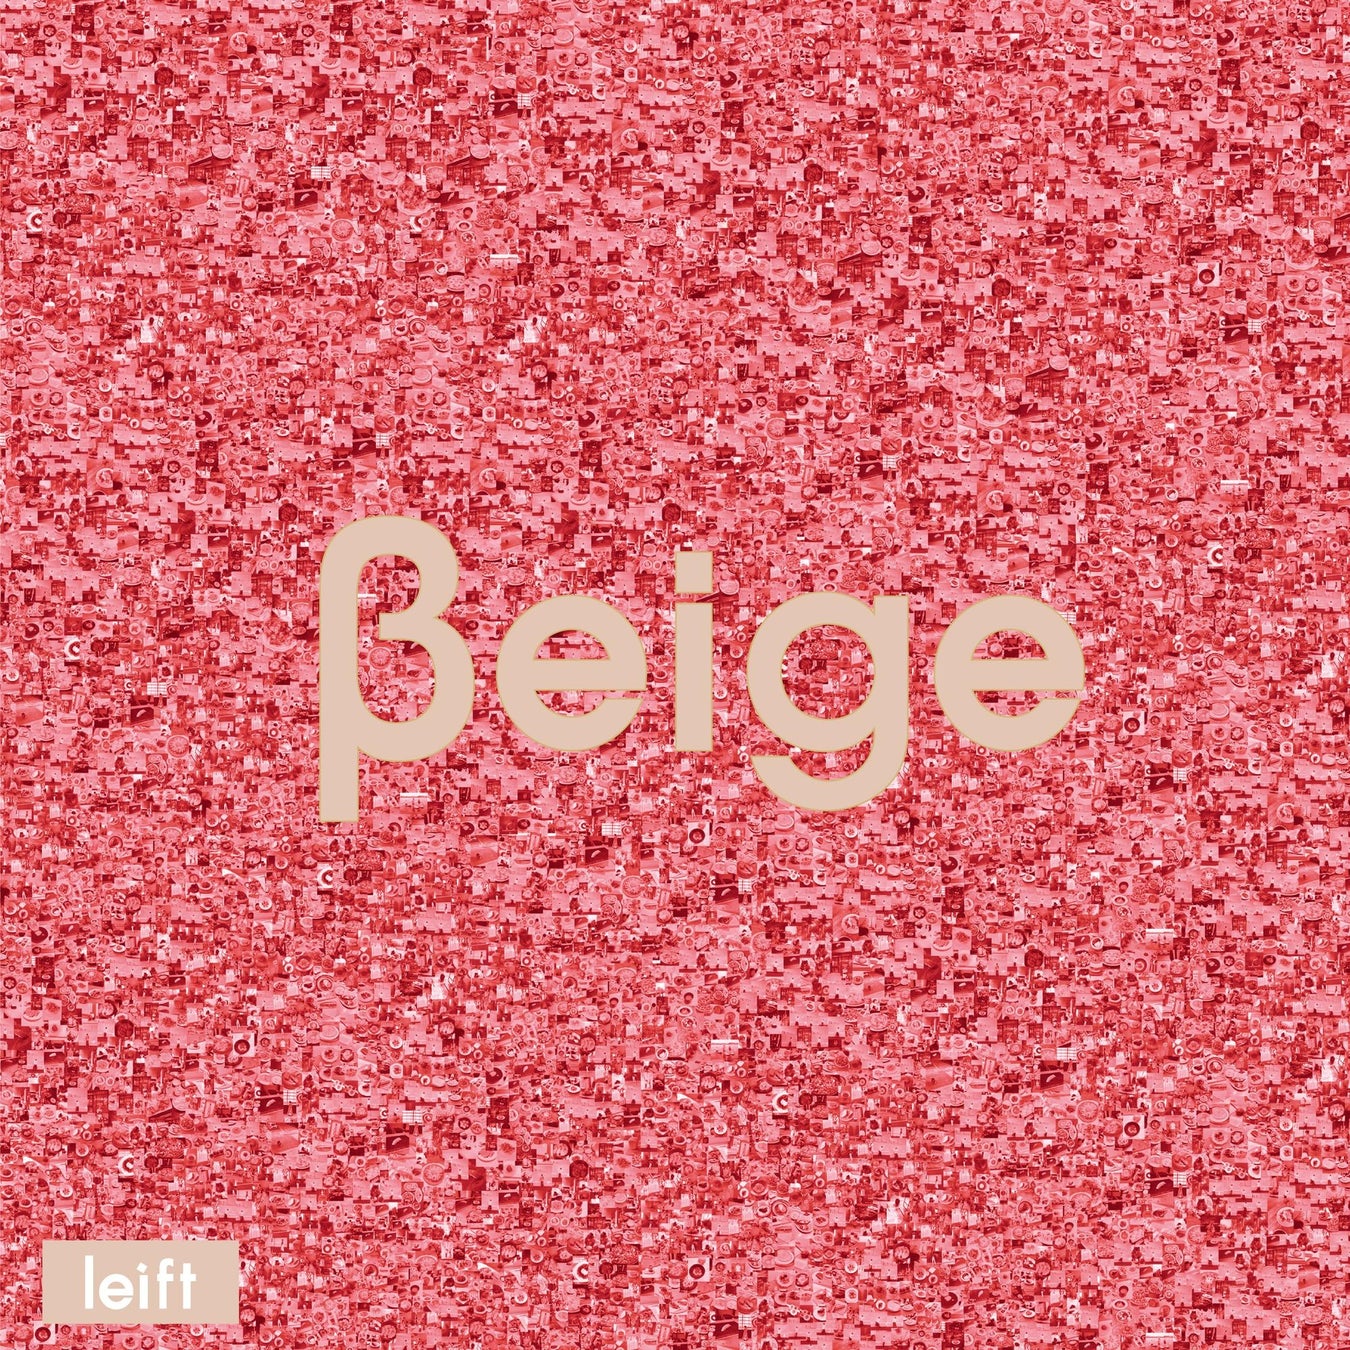 leift（レフト）がファーストアルバム『Beige』をリリース。リリックビデオ、ワンマンライブに向けて追加ライブのスケジュールも解禁。のサブ画像2